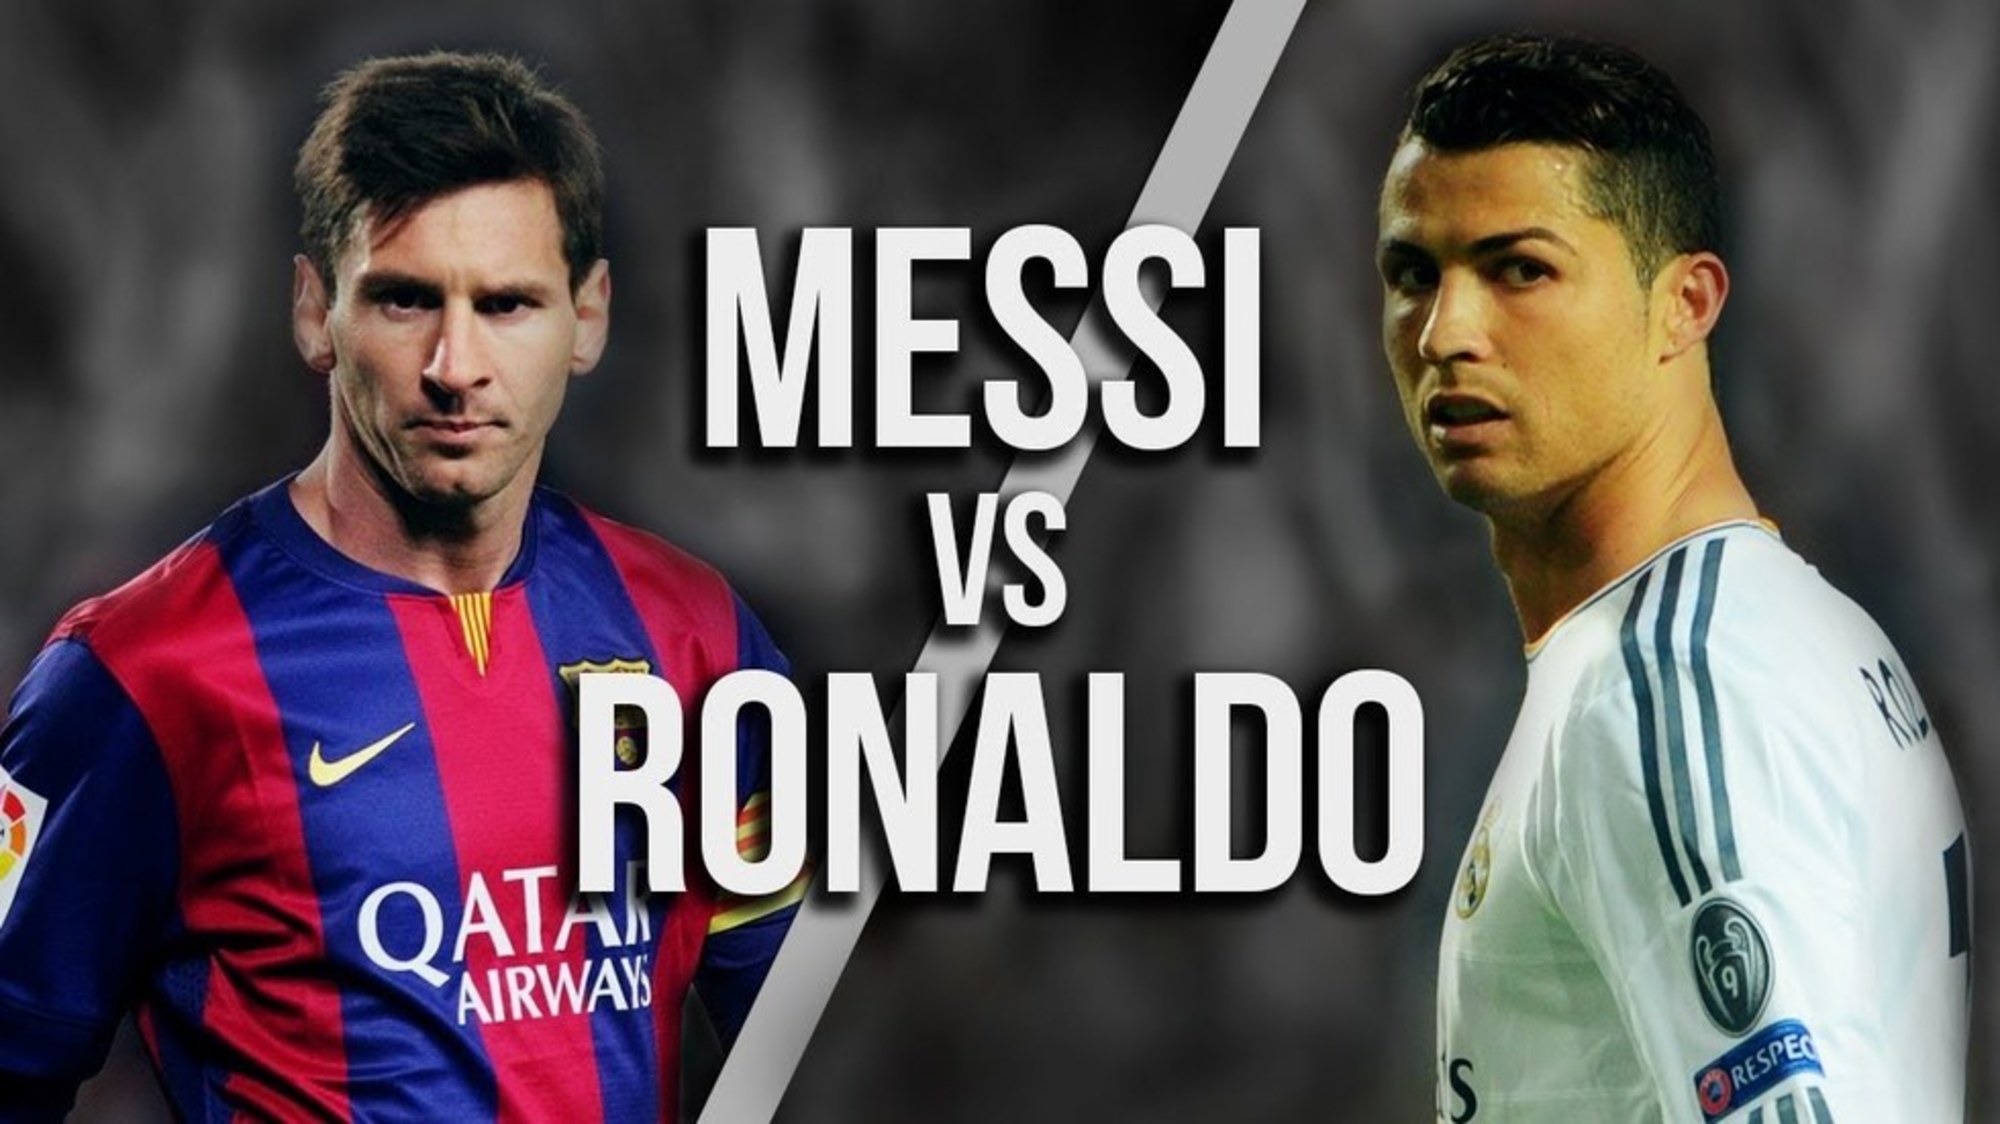 Messi vs Ronaldo comparison better football player